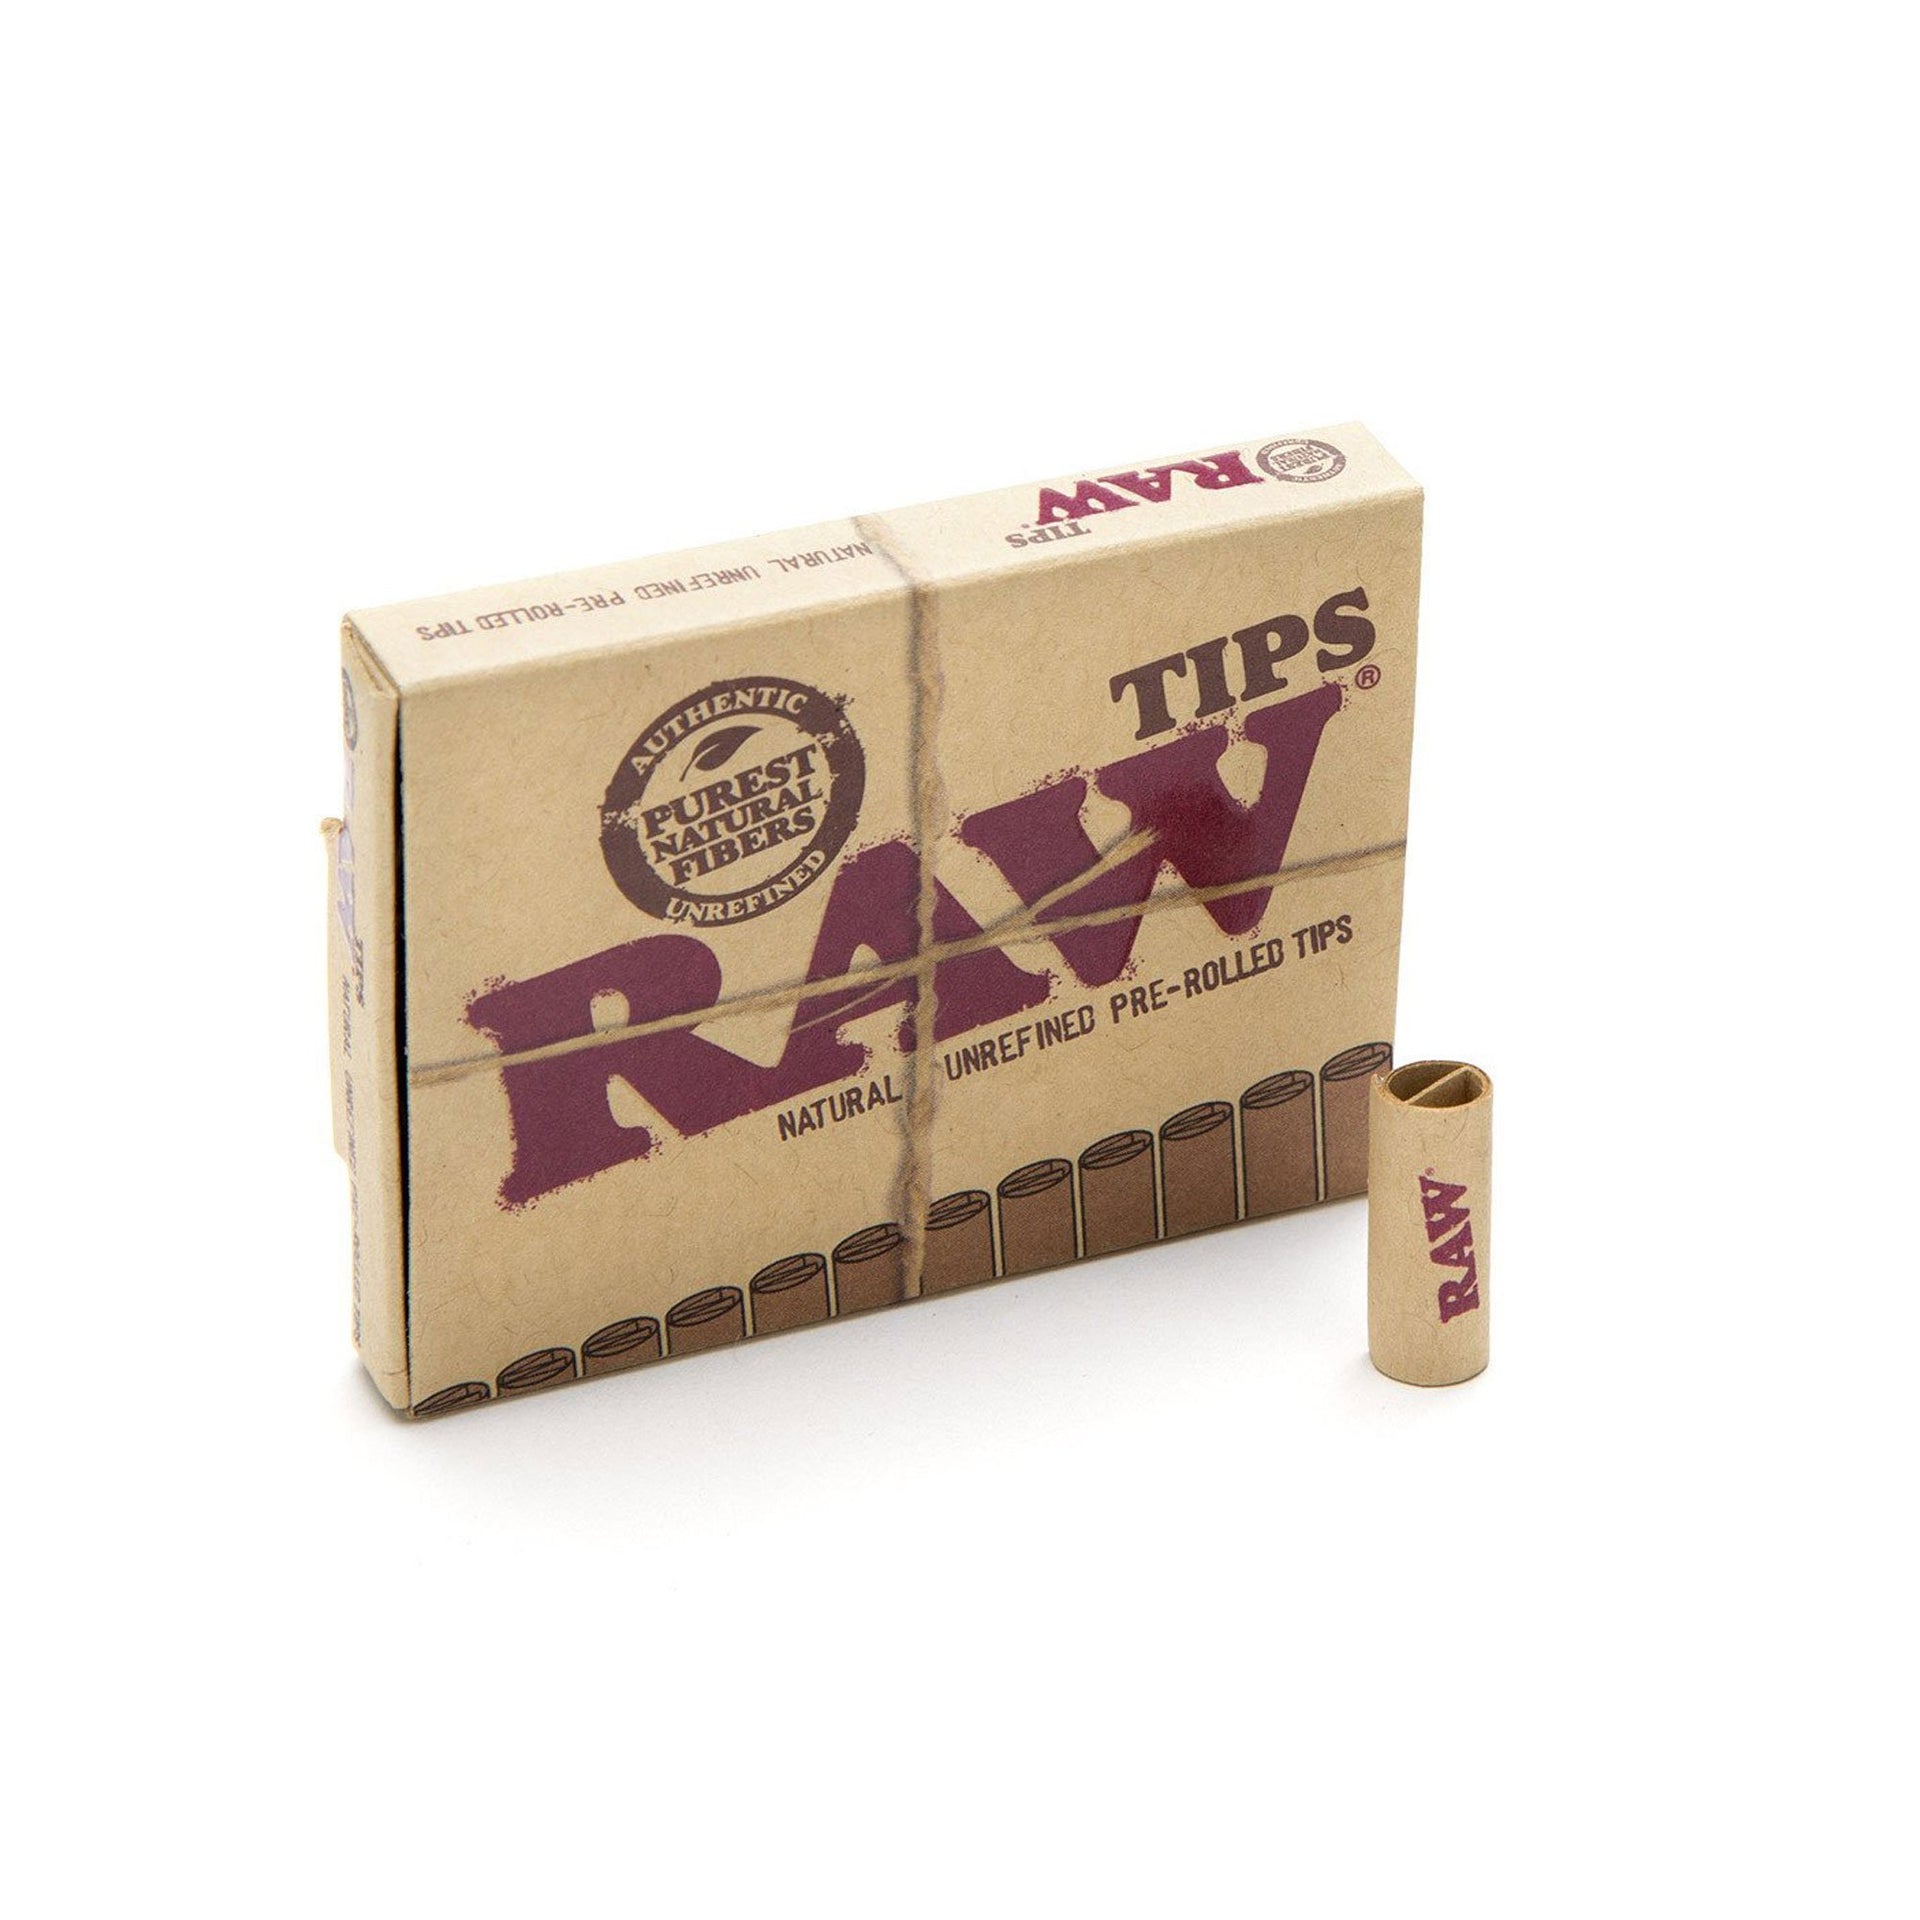 Filtre Raw Pré-Roulés (21pces) 1 Carton de 20pces